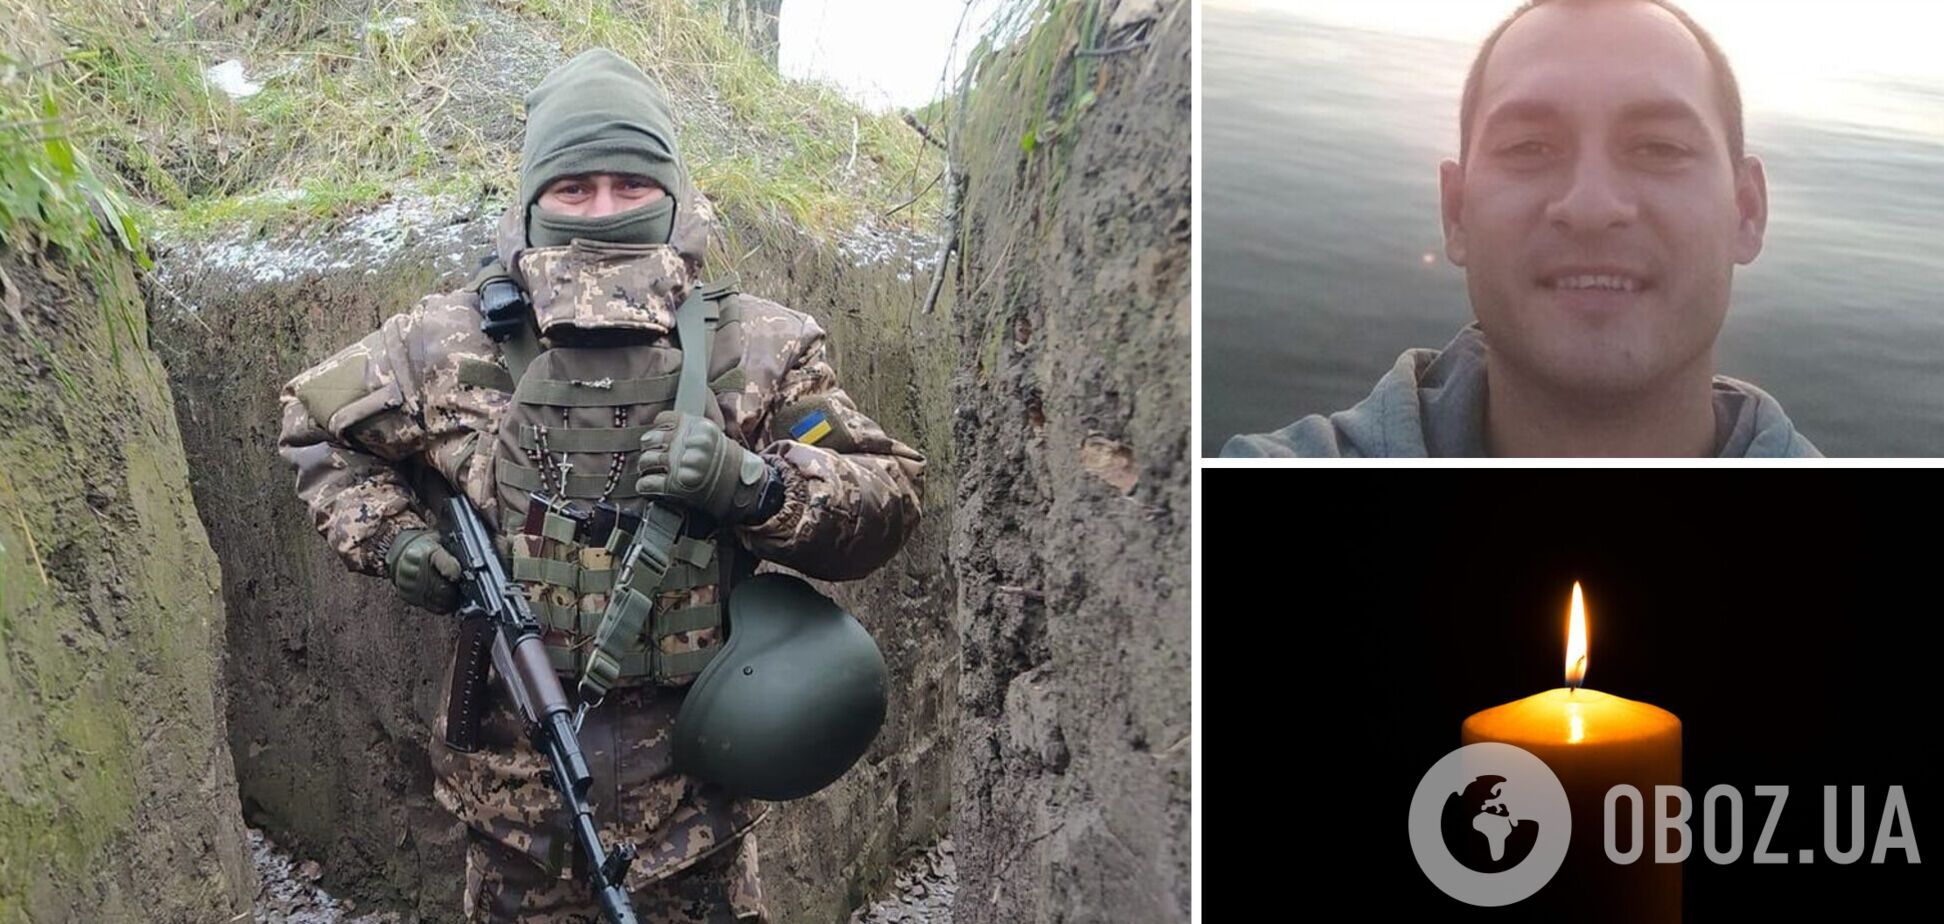 'Теряем лучших': в боях в Донецкой области погиб 30-летний защитник из Тернополя. Фото